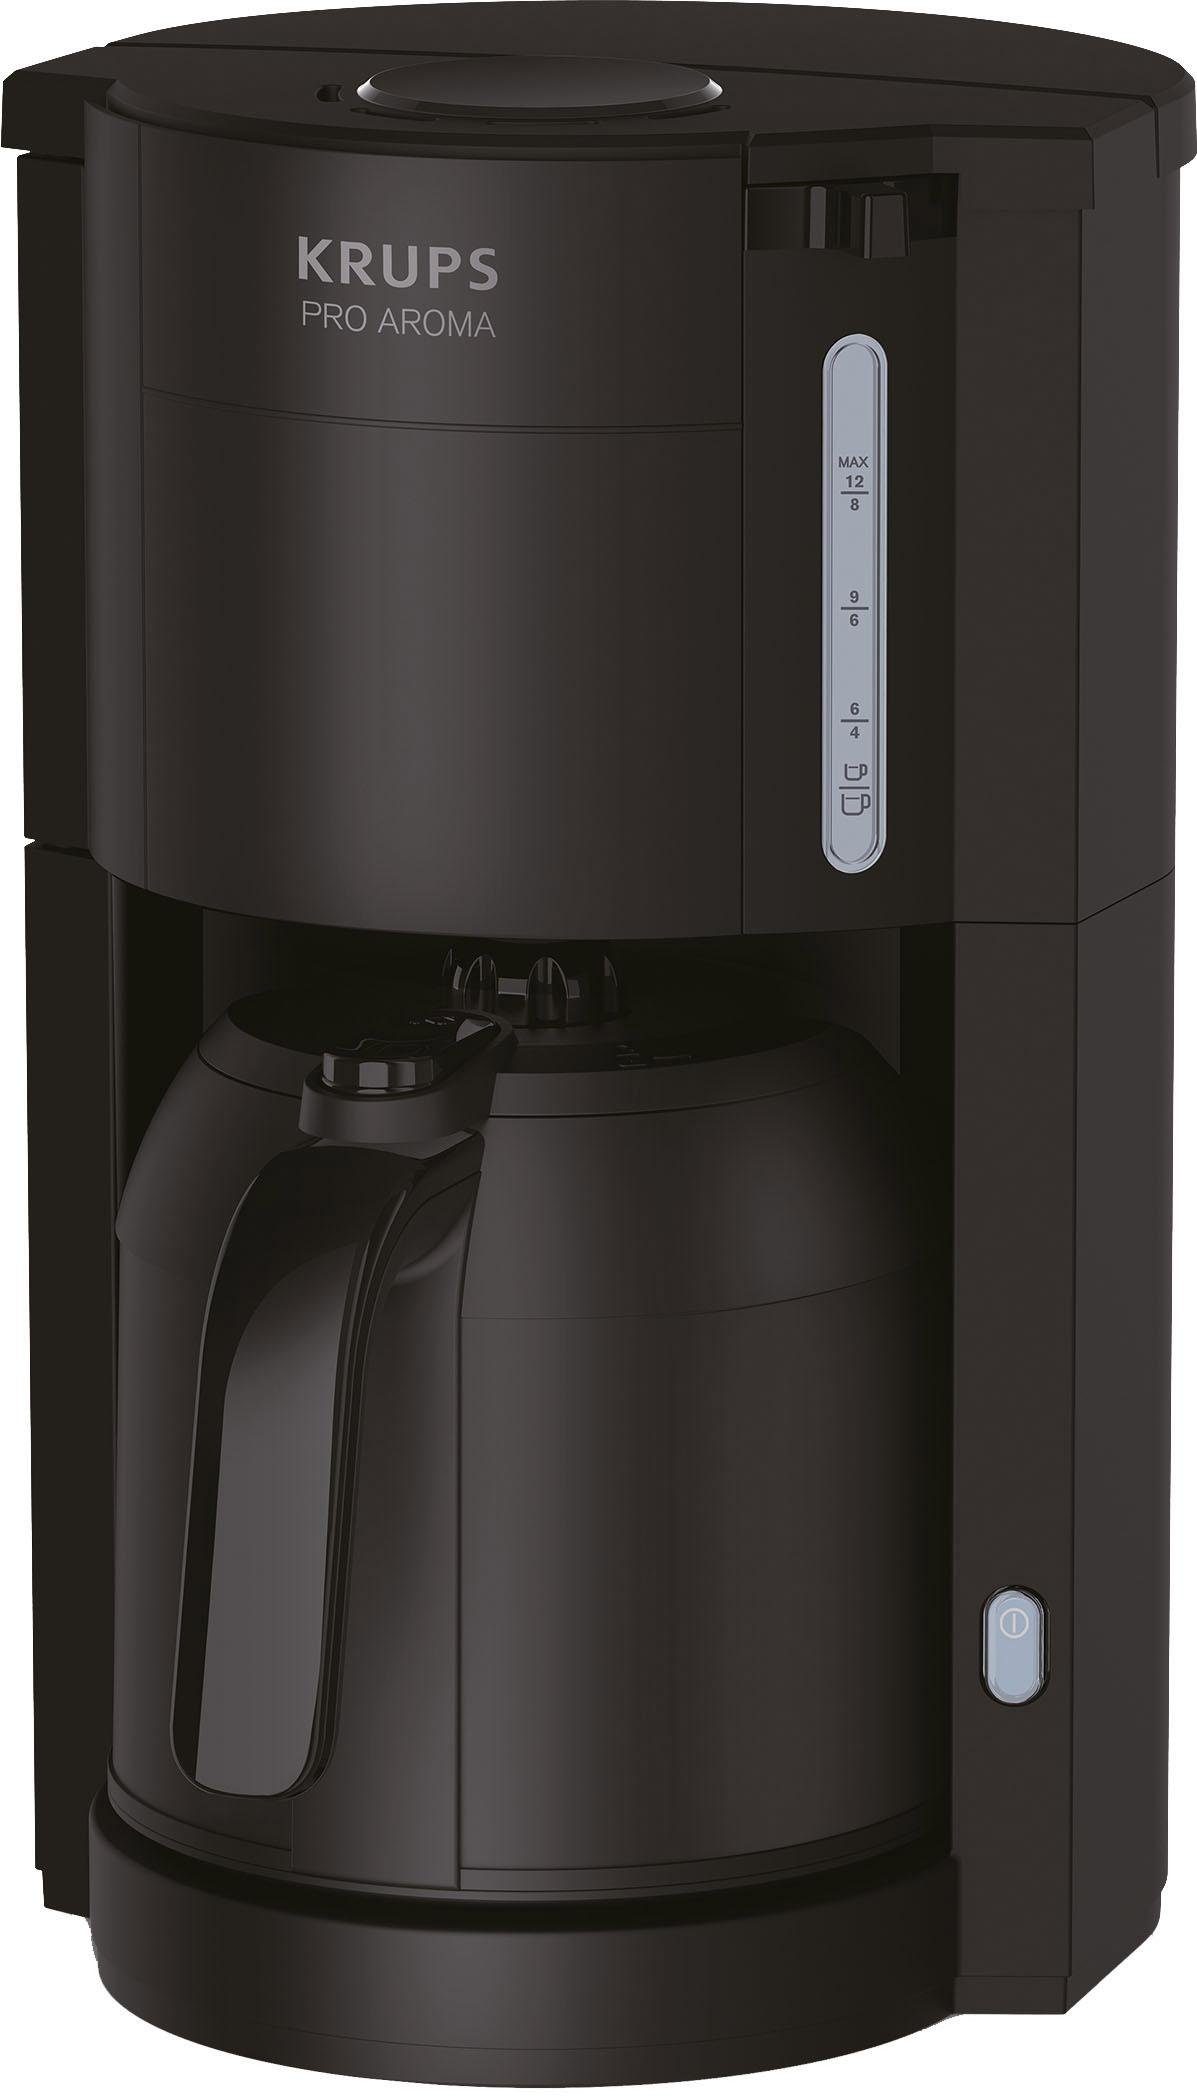 Krups Filterkaffeemaschine Pro Aroma KM3038, 1l Warmhalten zu bis Stunden Thermo-Kanne von Langes Papierfilter, dank Kaffeekanne, 4